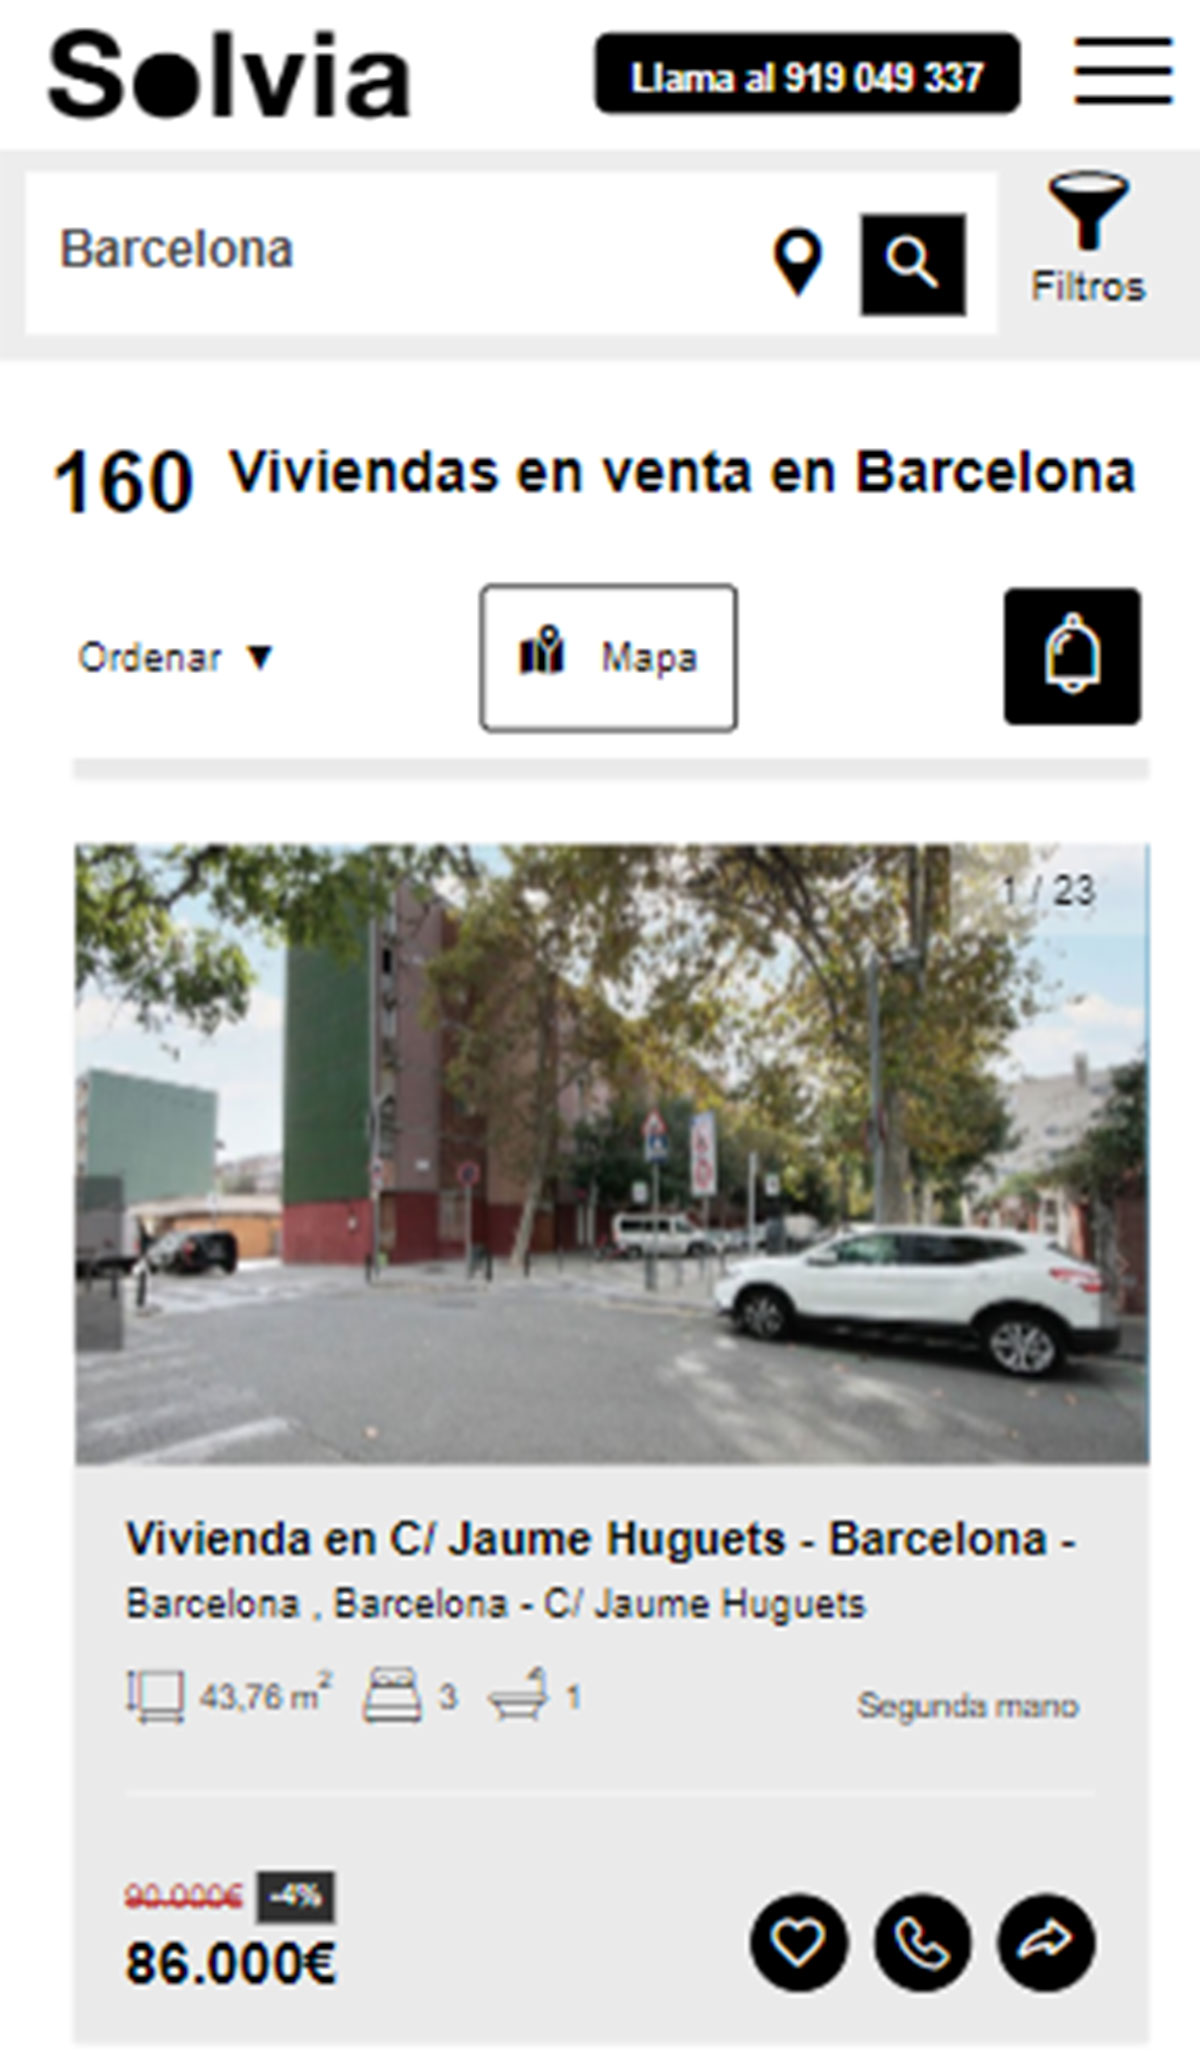 Piso en la ciudad de Barcelona por 86.000 euros